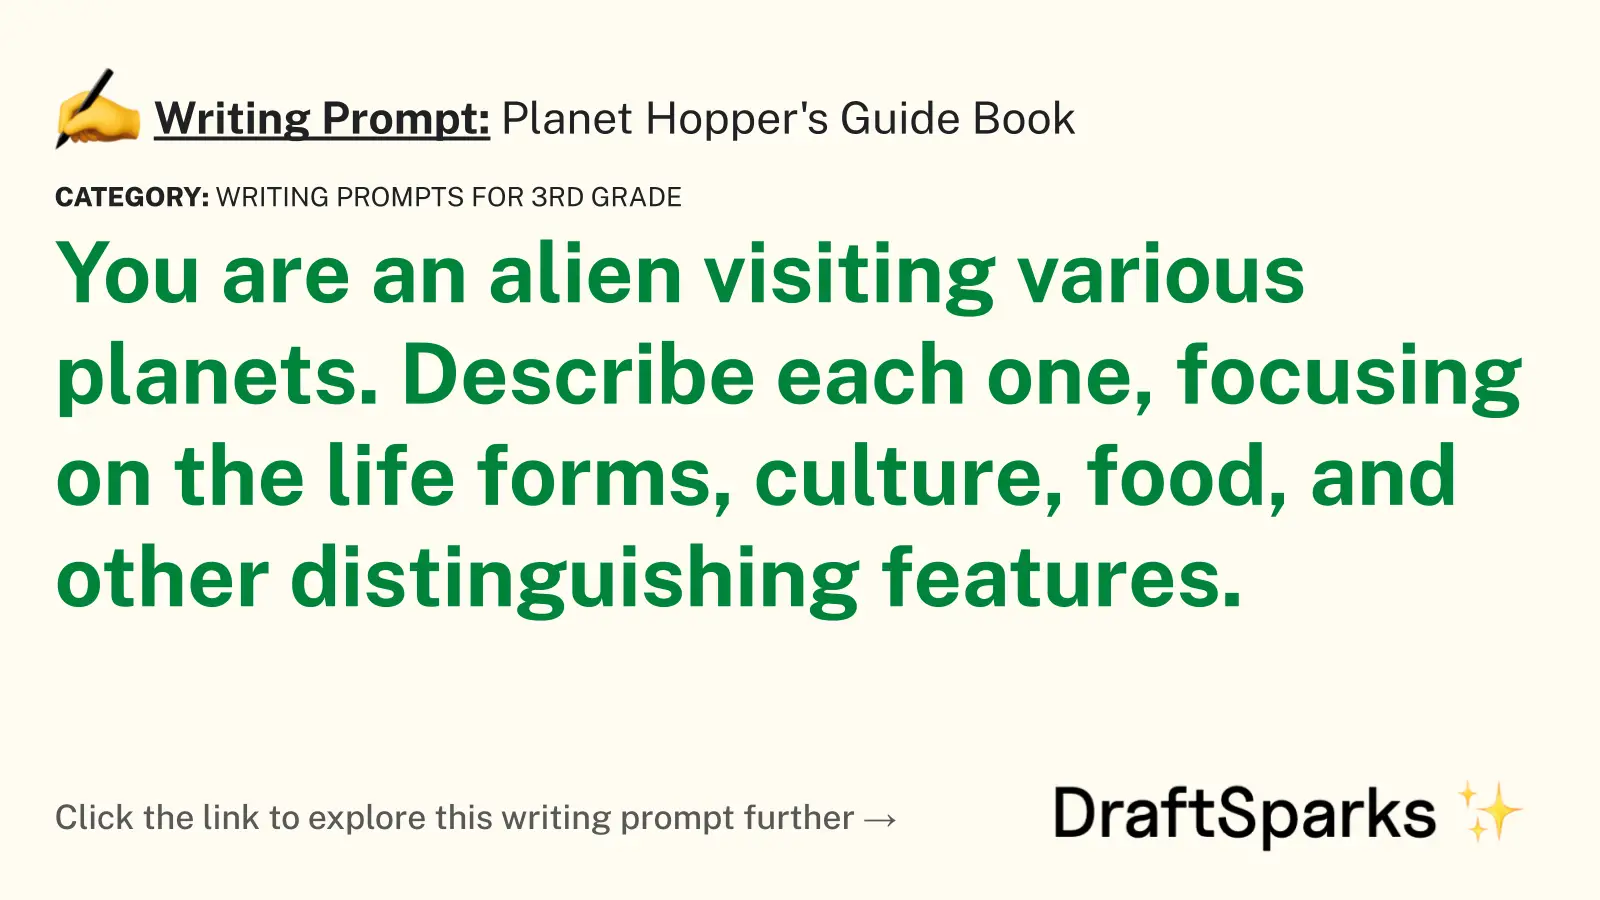 Planet Hopper’s Guide Book